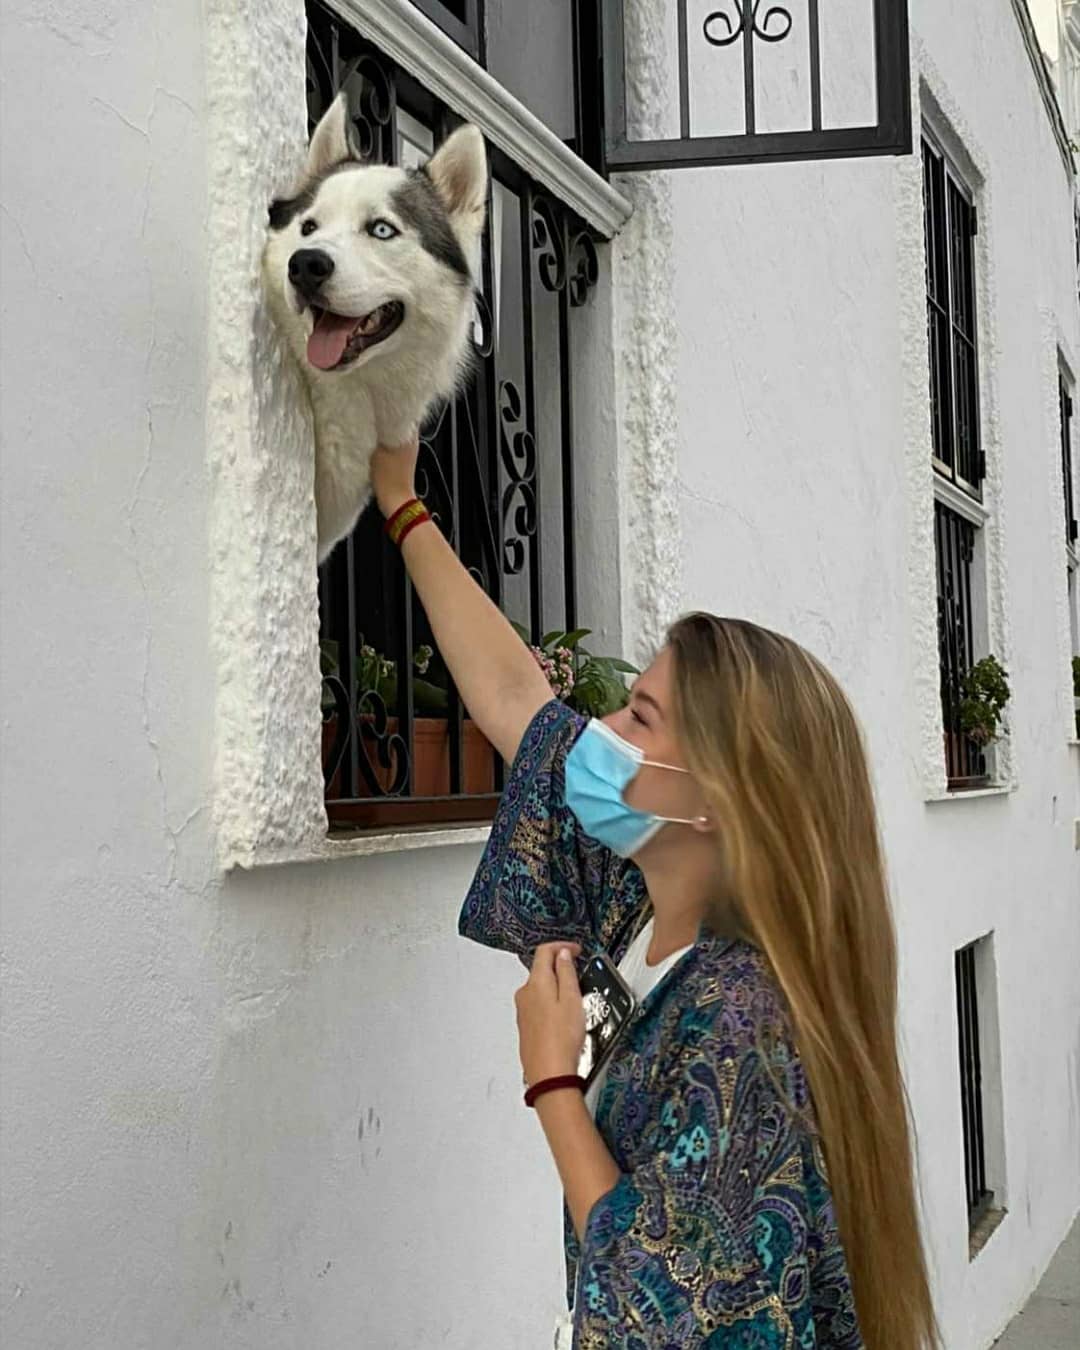 O cão se tornou um símbolo para a cidade. Foto: Reprodução/Instagram/@elbalcondehalong_